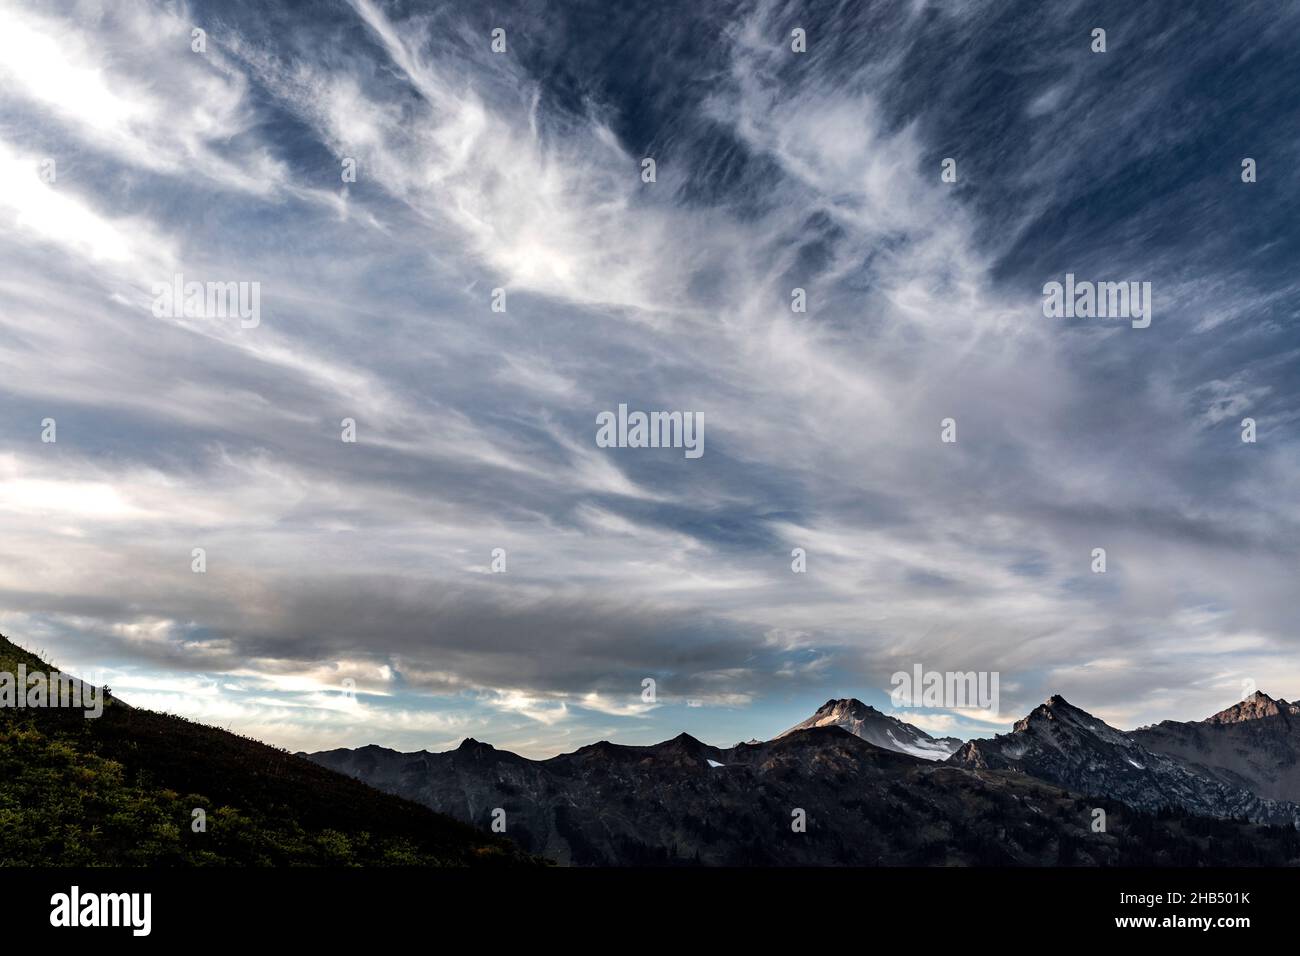 WA20511-00....WASHINGTON - nuages le long du Pacific Crest Trail dans la nature de Glacier Peak, forêt nationale de Mount Baker Snoqualmie.Glacier Peak i Banque D'Images